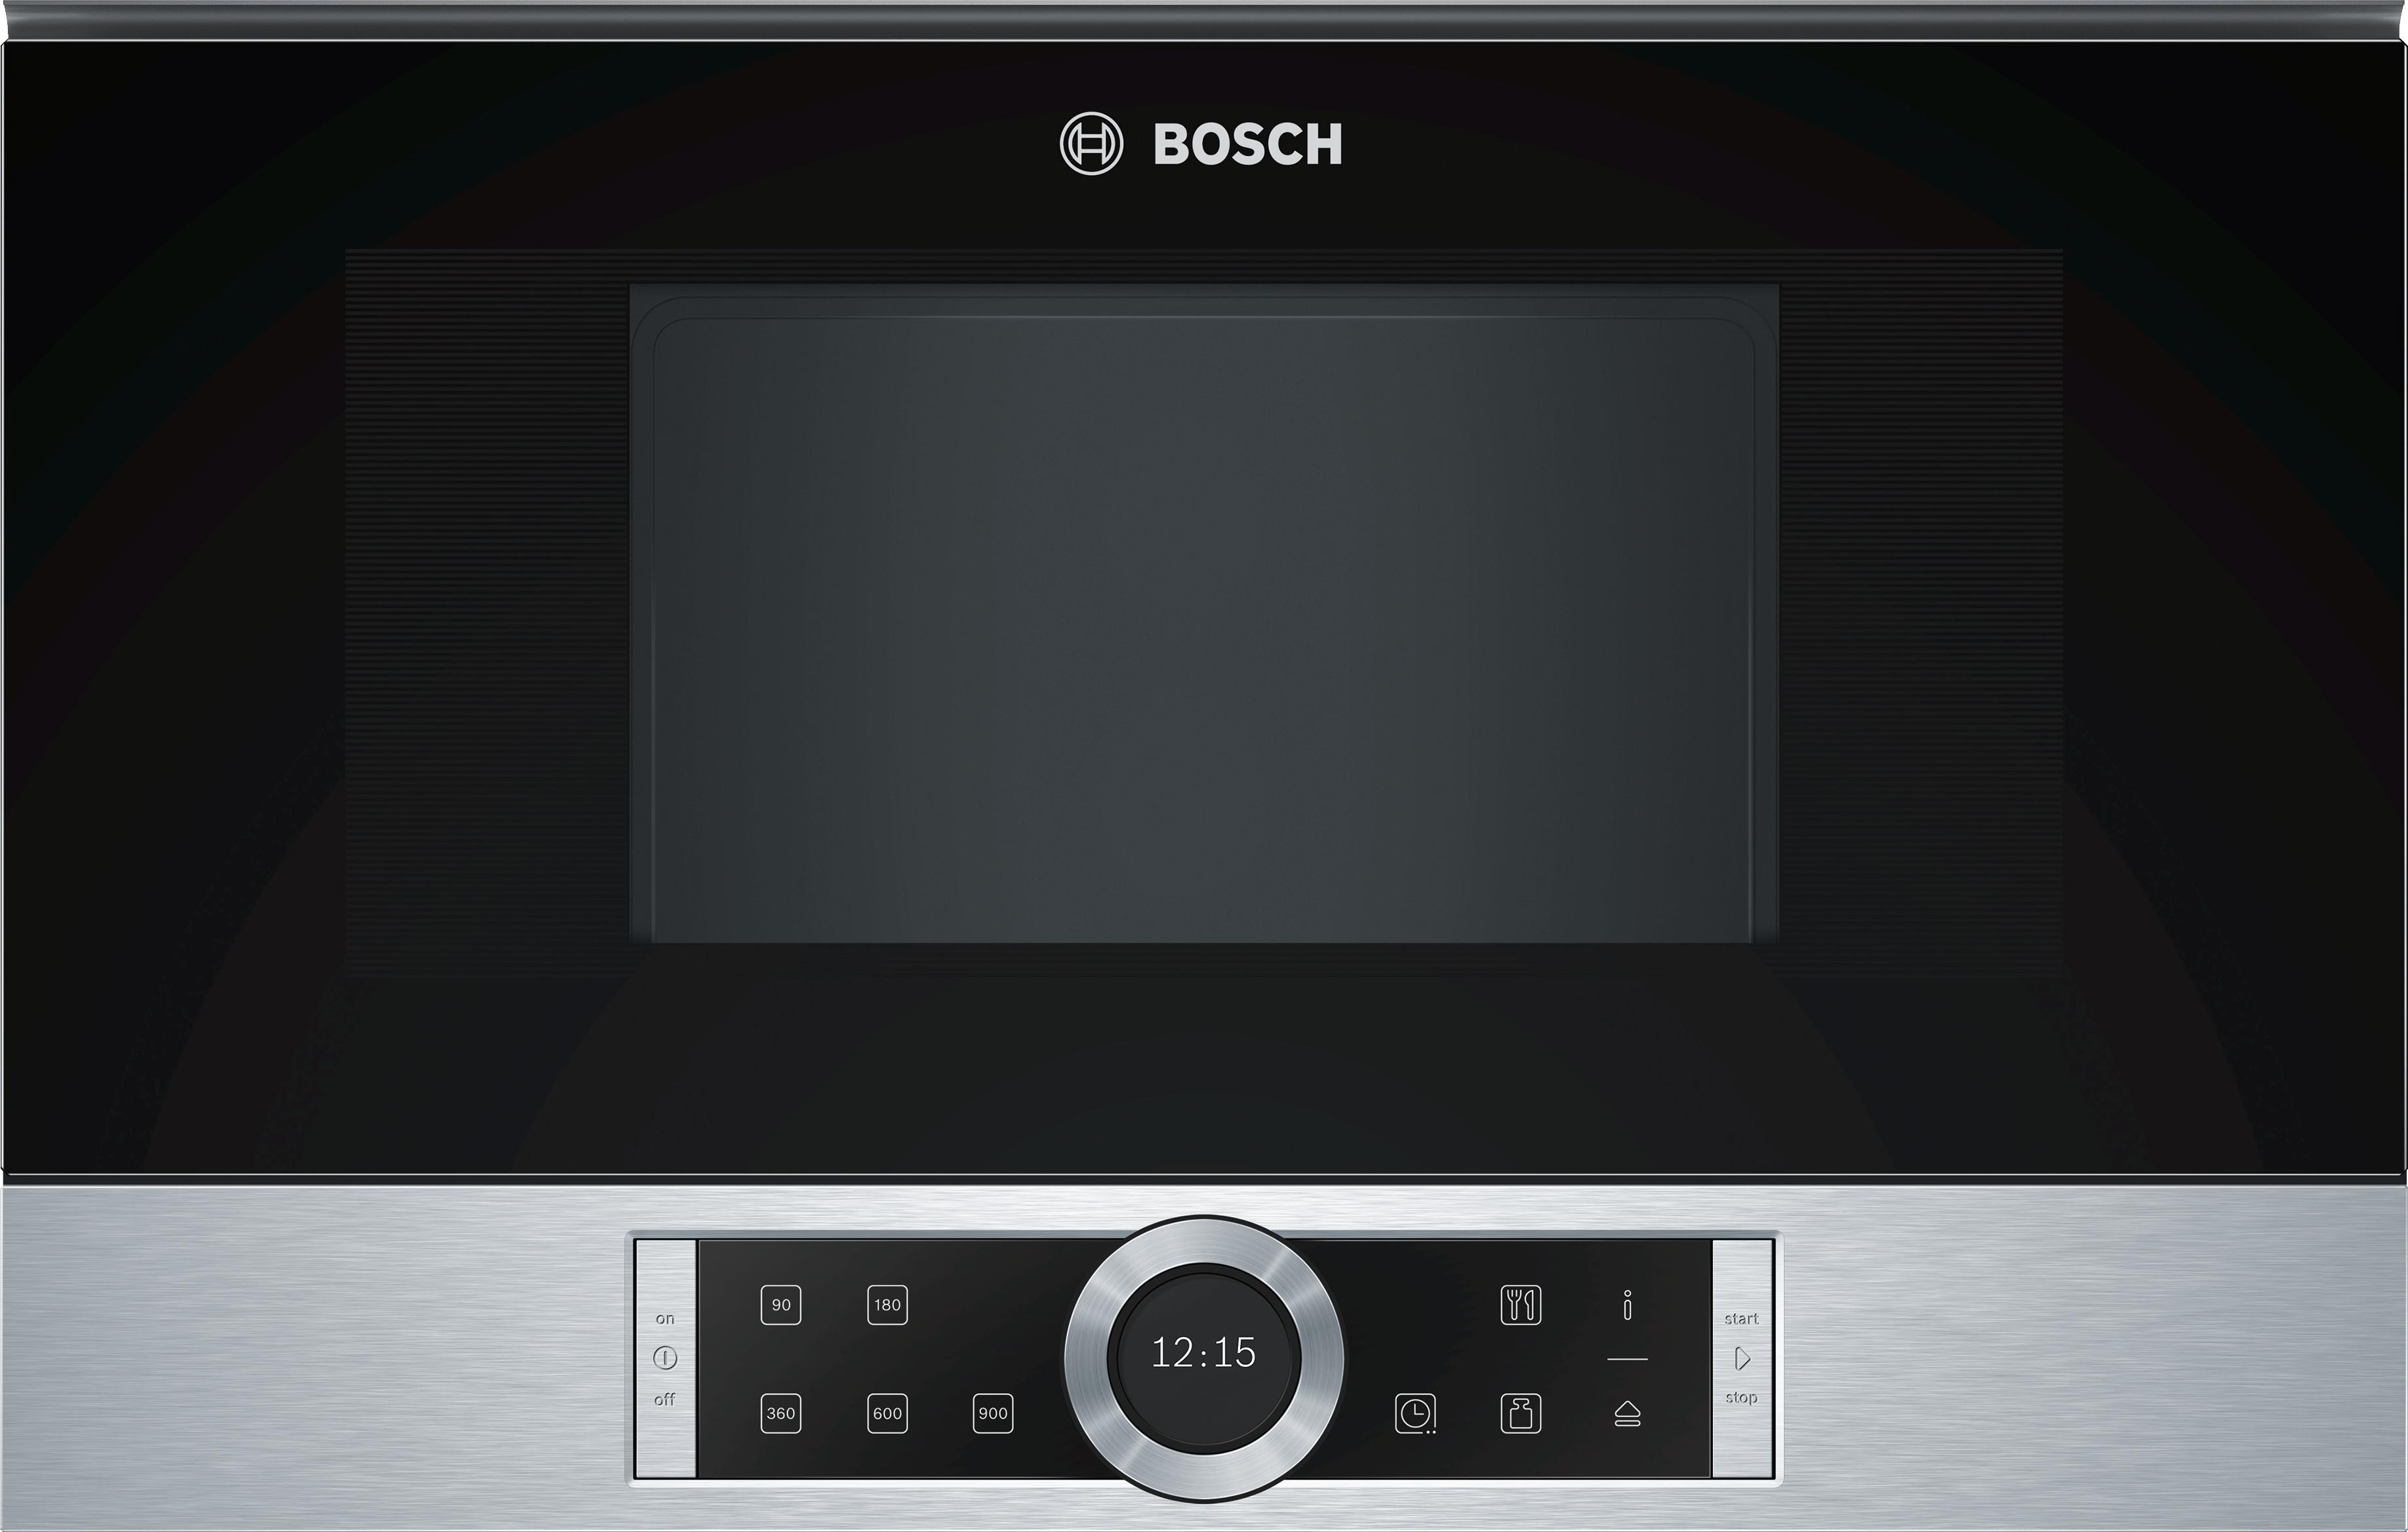 Свч бош встраиваемая. Bosch bel634gs1. Микроволновая печь встраиваемая Bosch bfl634gb1. Микроволновая печь встраиваемая Bosch bfr634gs1. Встраиваемая микроволновая печь СВЧ Bosch bfl634gs1.